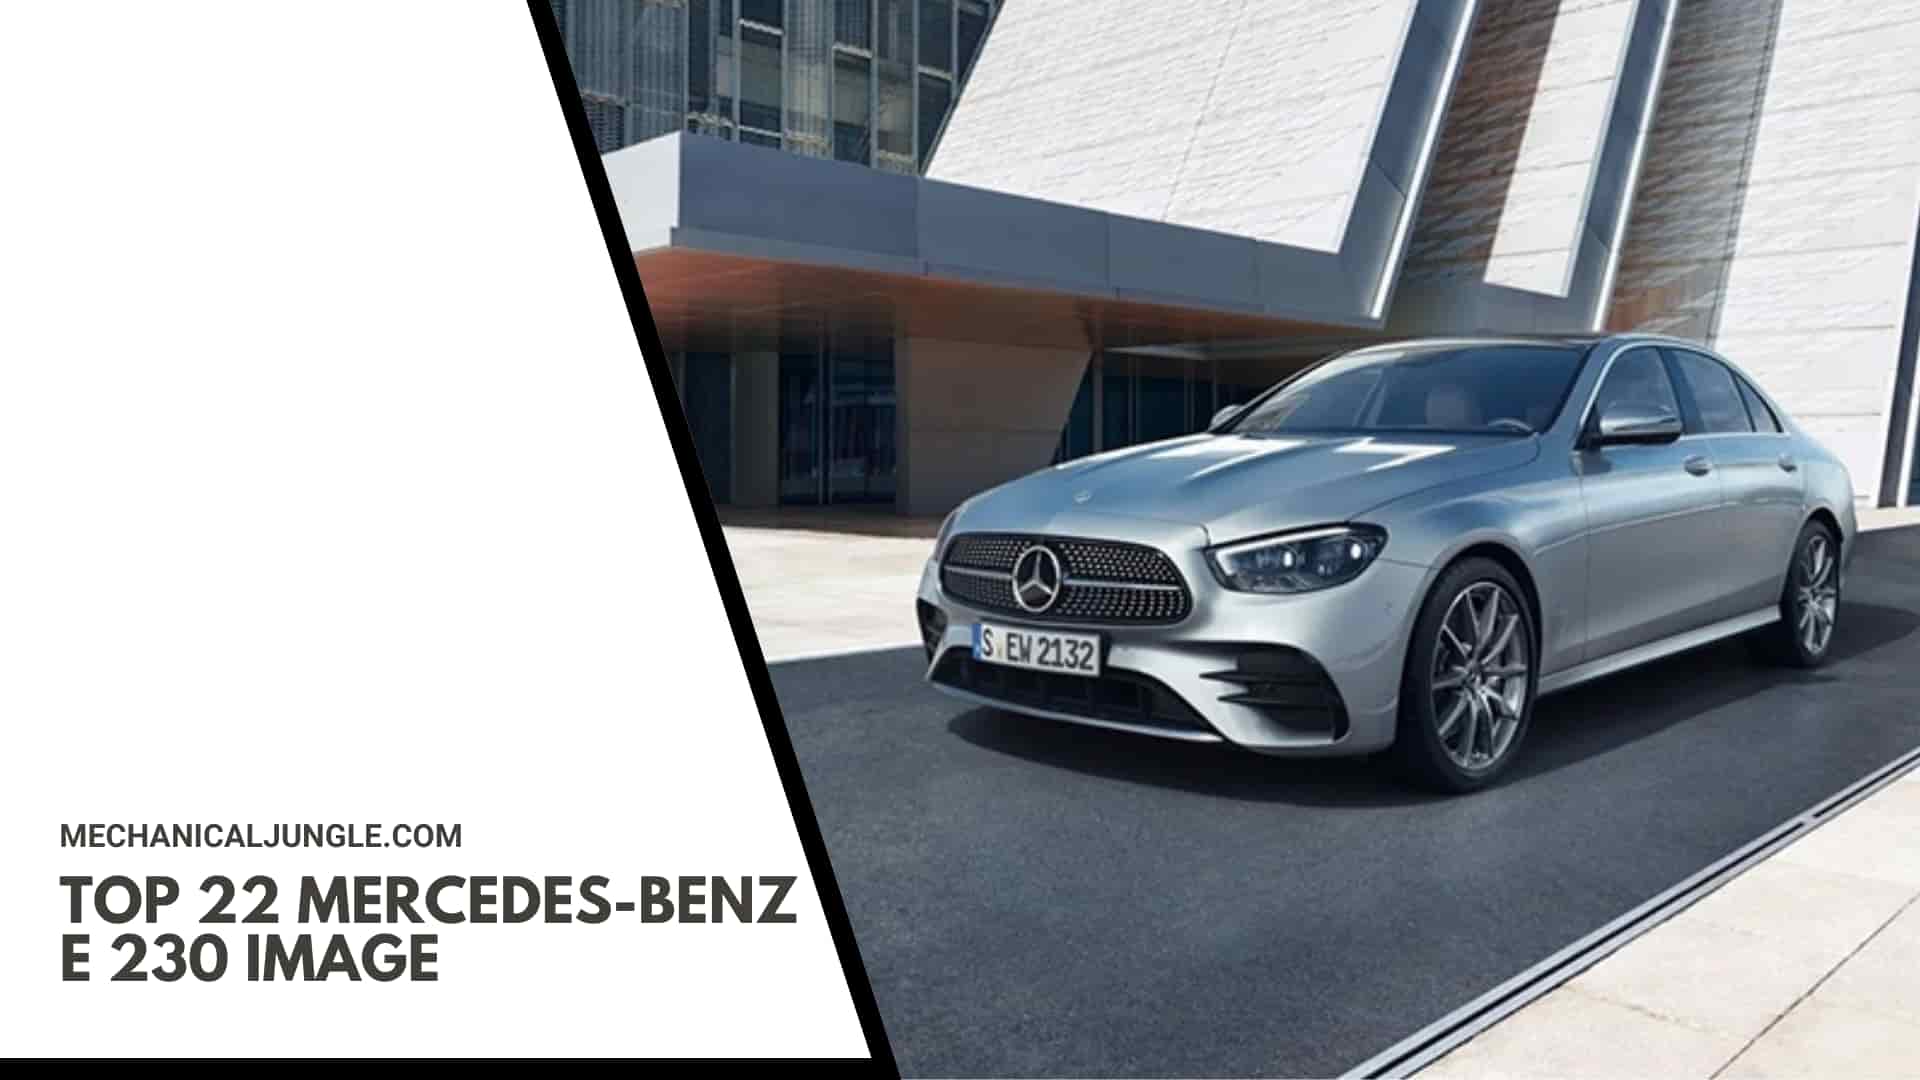 Top 22 Mercedes-Benz E 230 Image